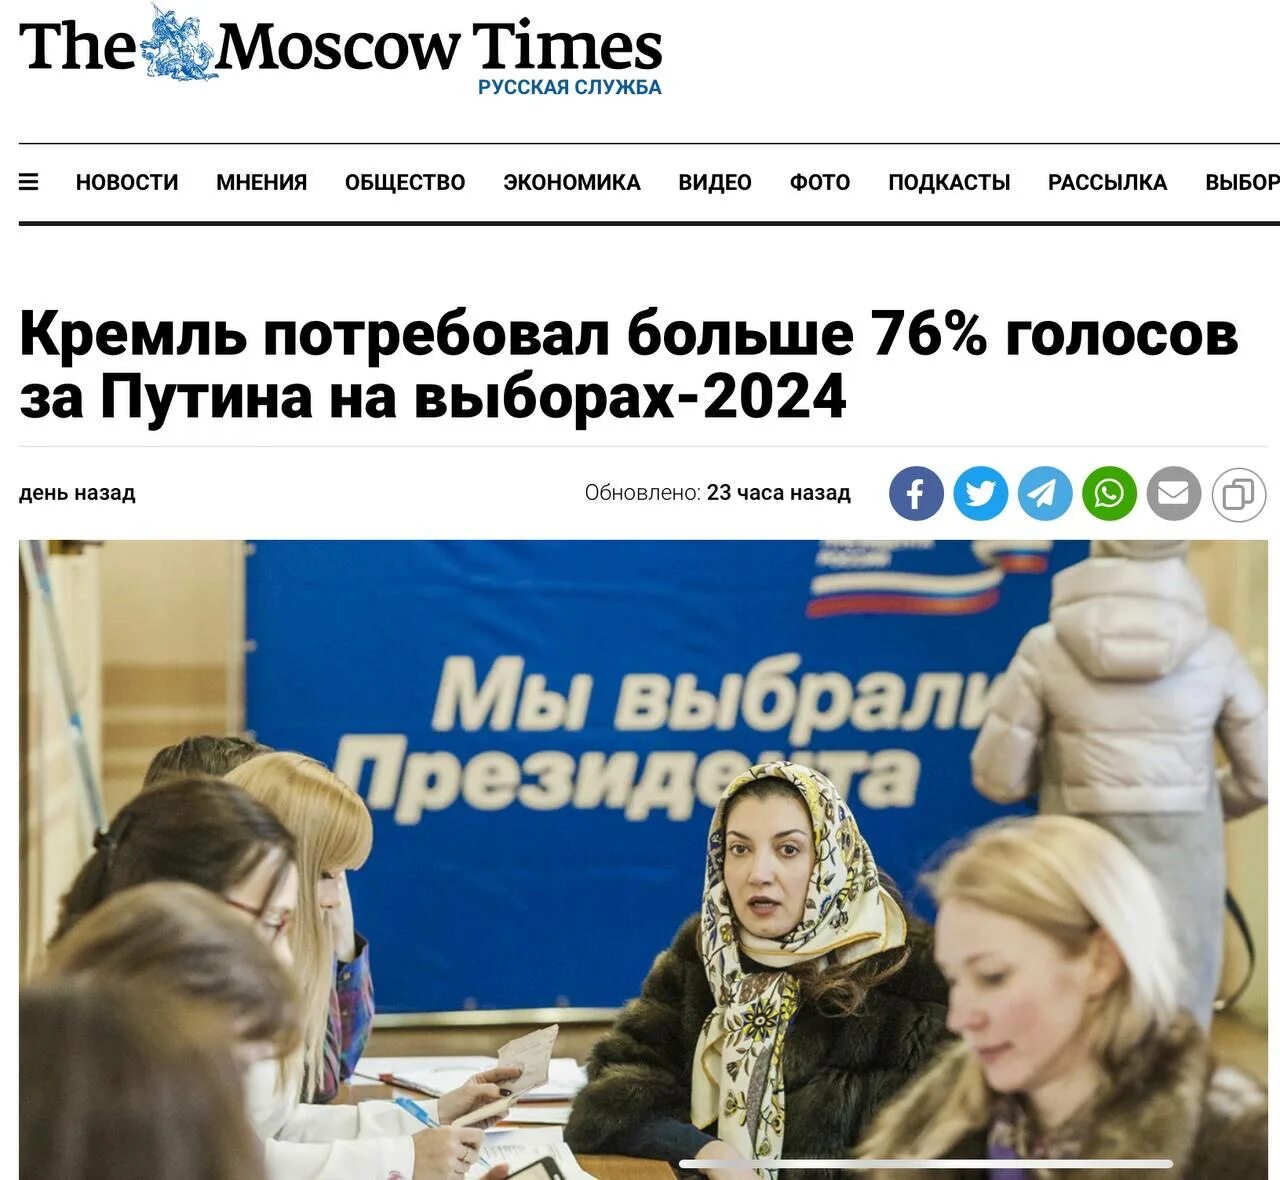 Выборы 2024 до которого часа. Выборы 2024. Выборы в России 2024. Выборы президента России 2024. Кандидаты на выборах 2024.